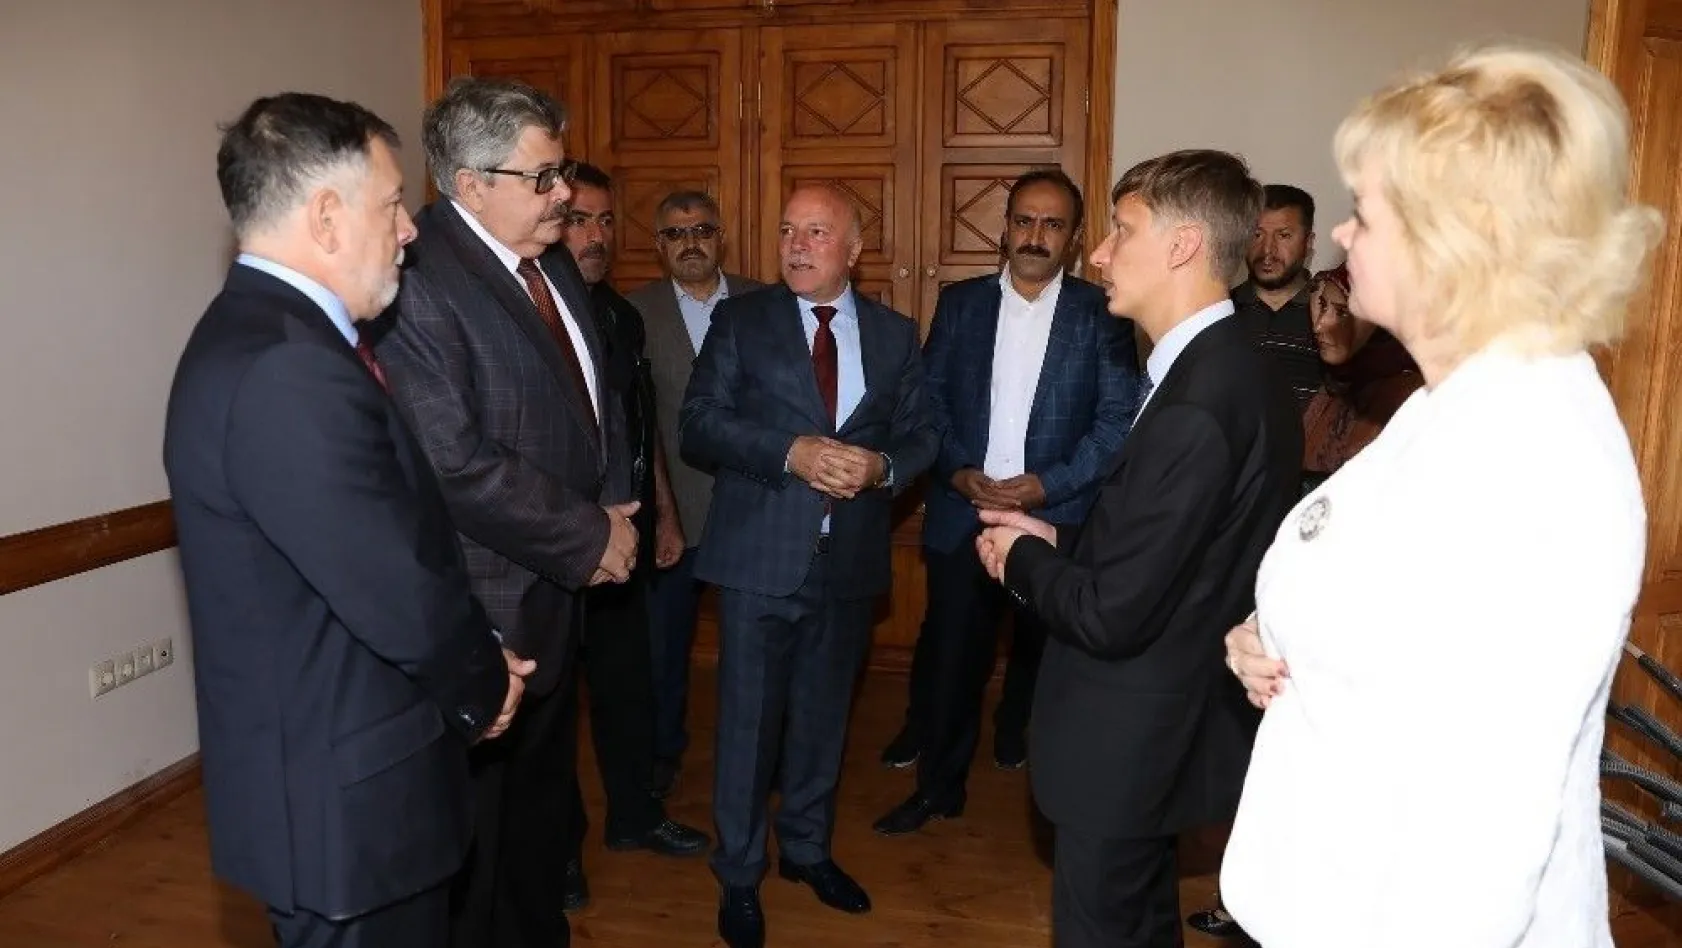 Rusya Ankara Büyükelçisi Yerhov'dan Başkan Sekmen'e müze teşekkürü
